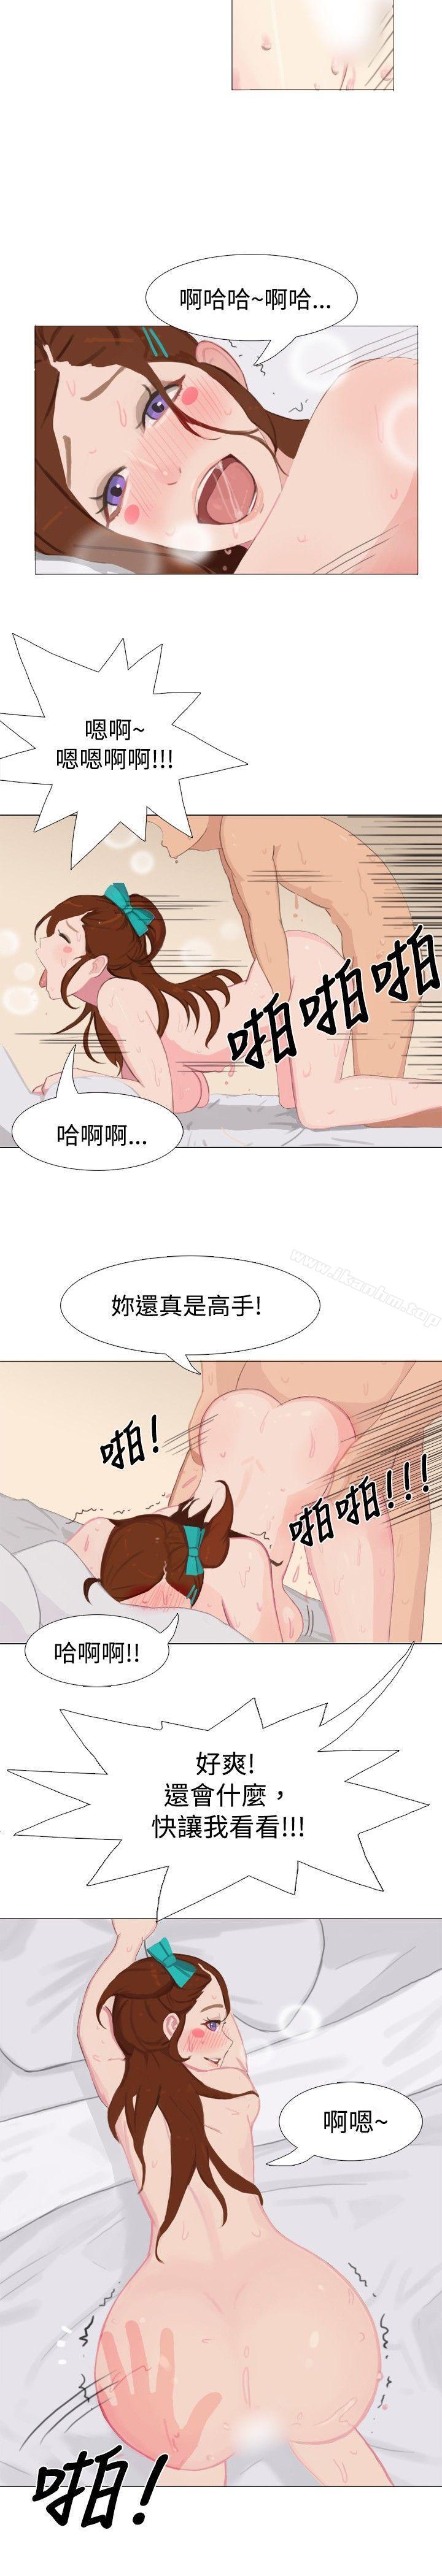 秘密Story 在线观看 秘密Story 清純女的一夜情(中) 漫画图片9